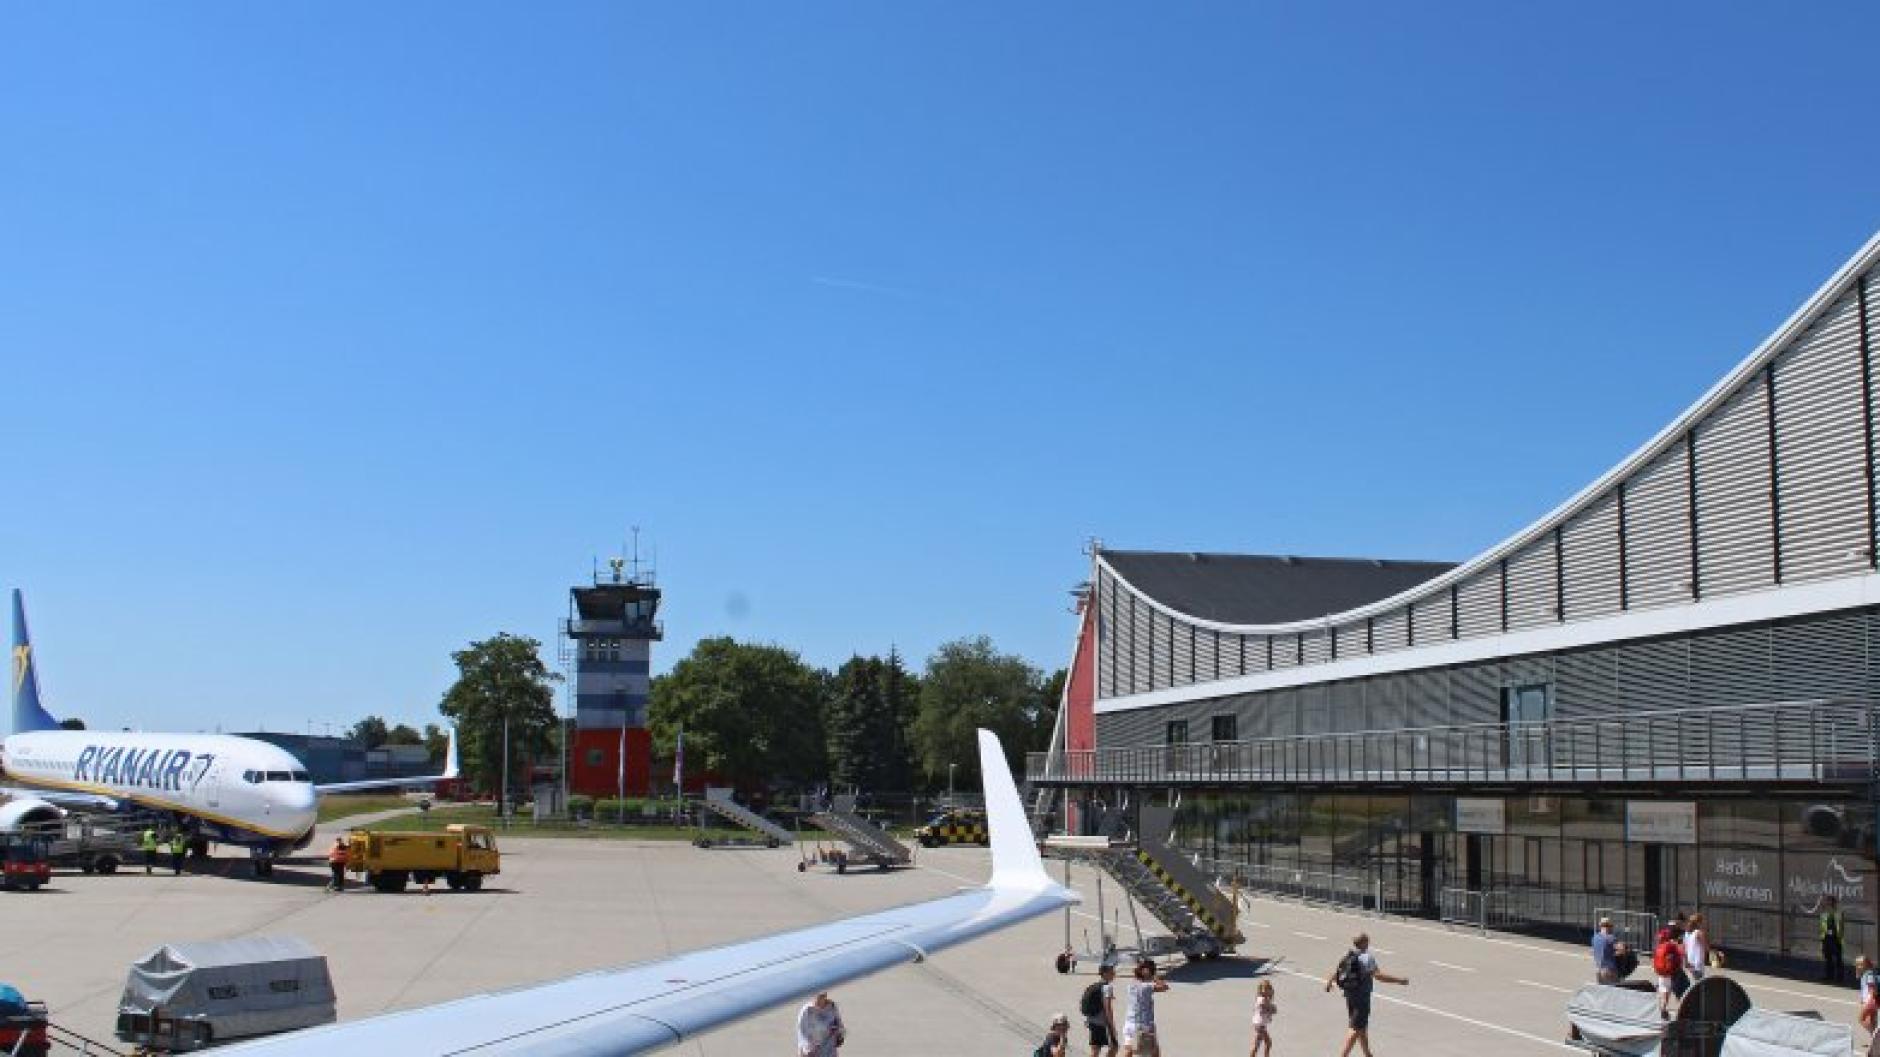 Flughafen Memmingen Allgäu Airport nimmt 2020 neue Flugziele ins Programm Augsburger Allgemeine